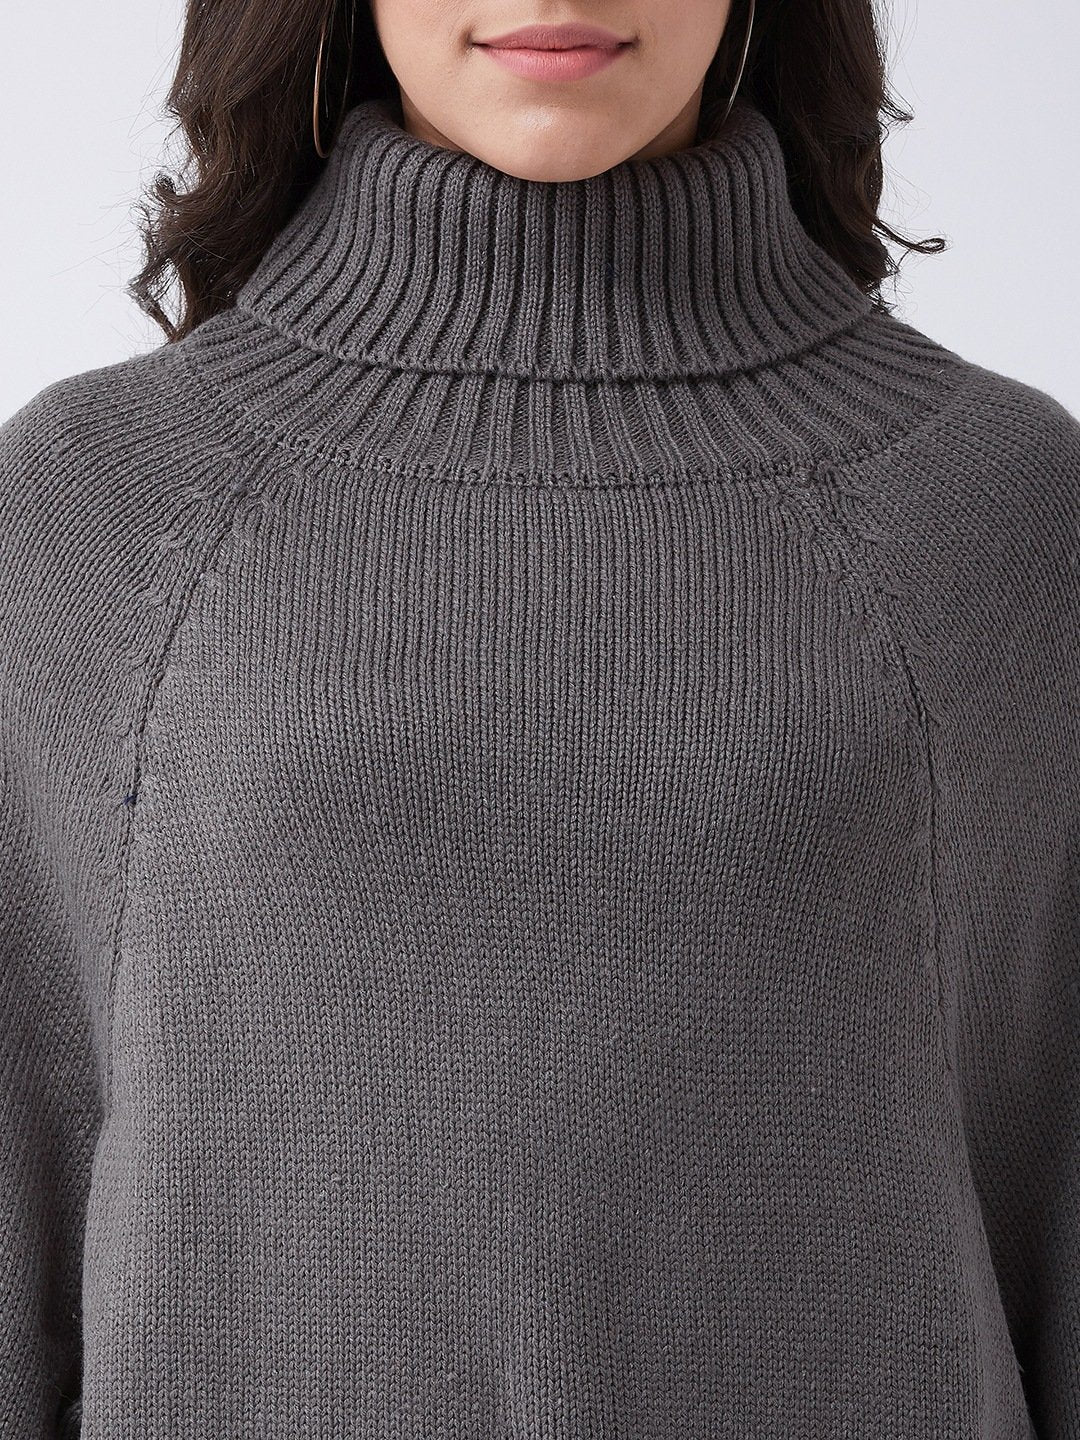 Grey Sweater Poncho